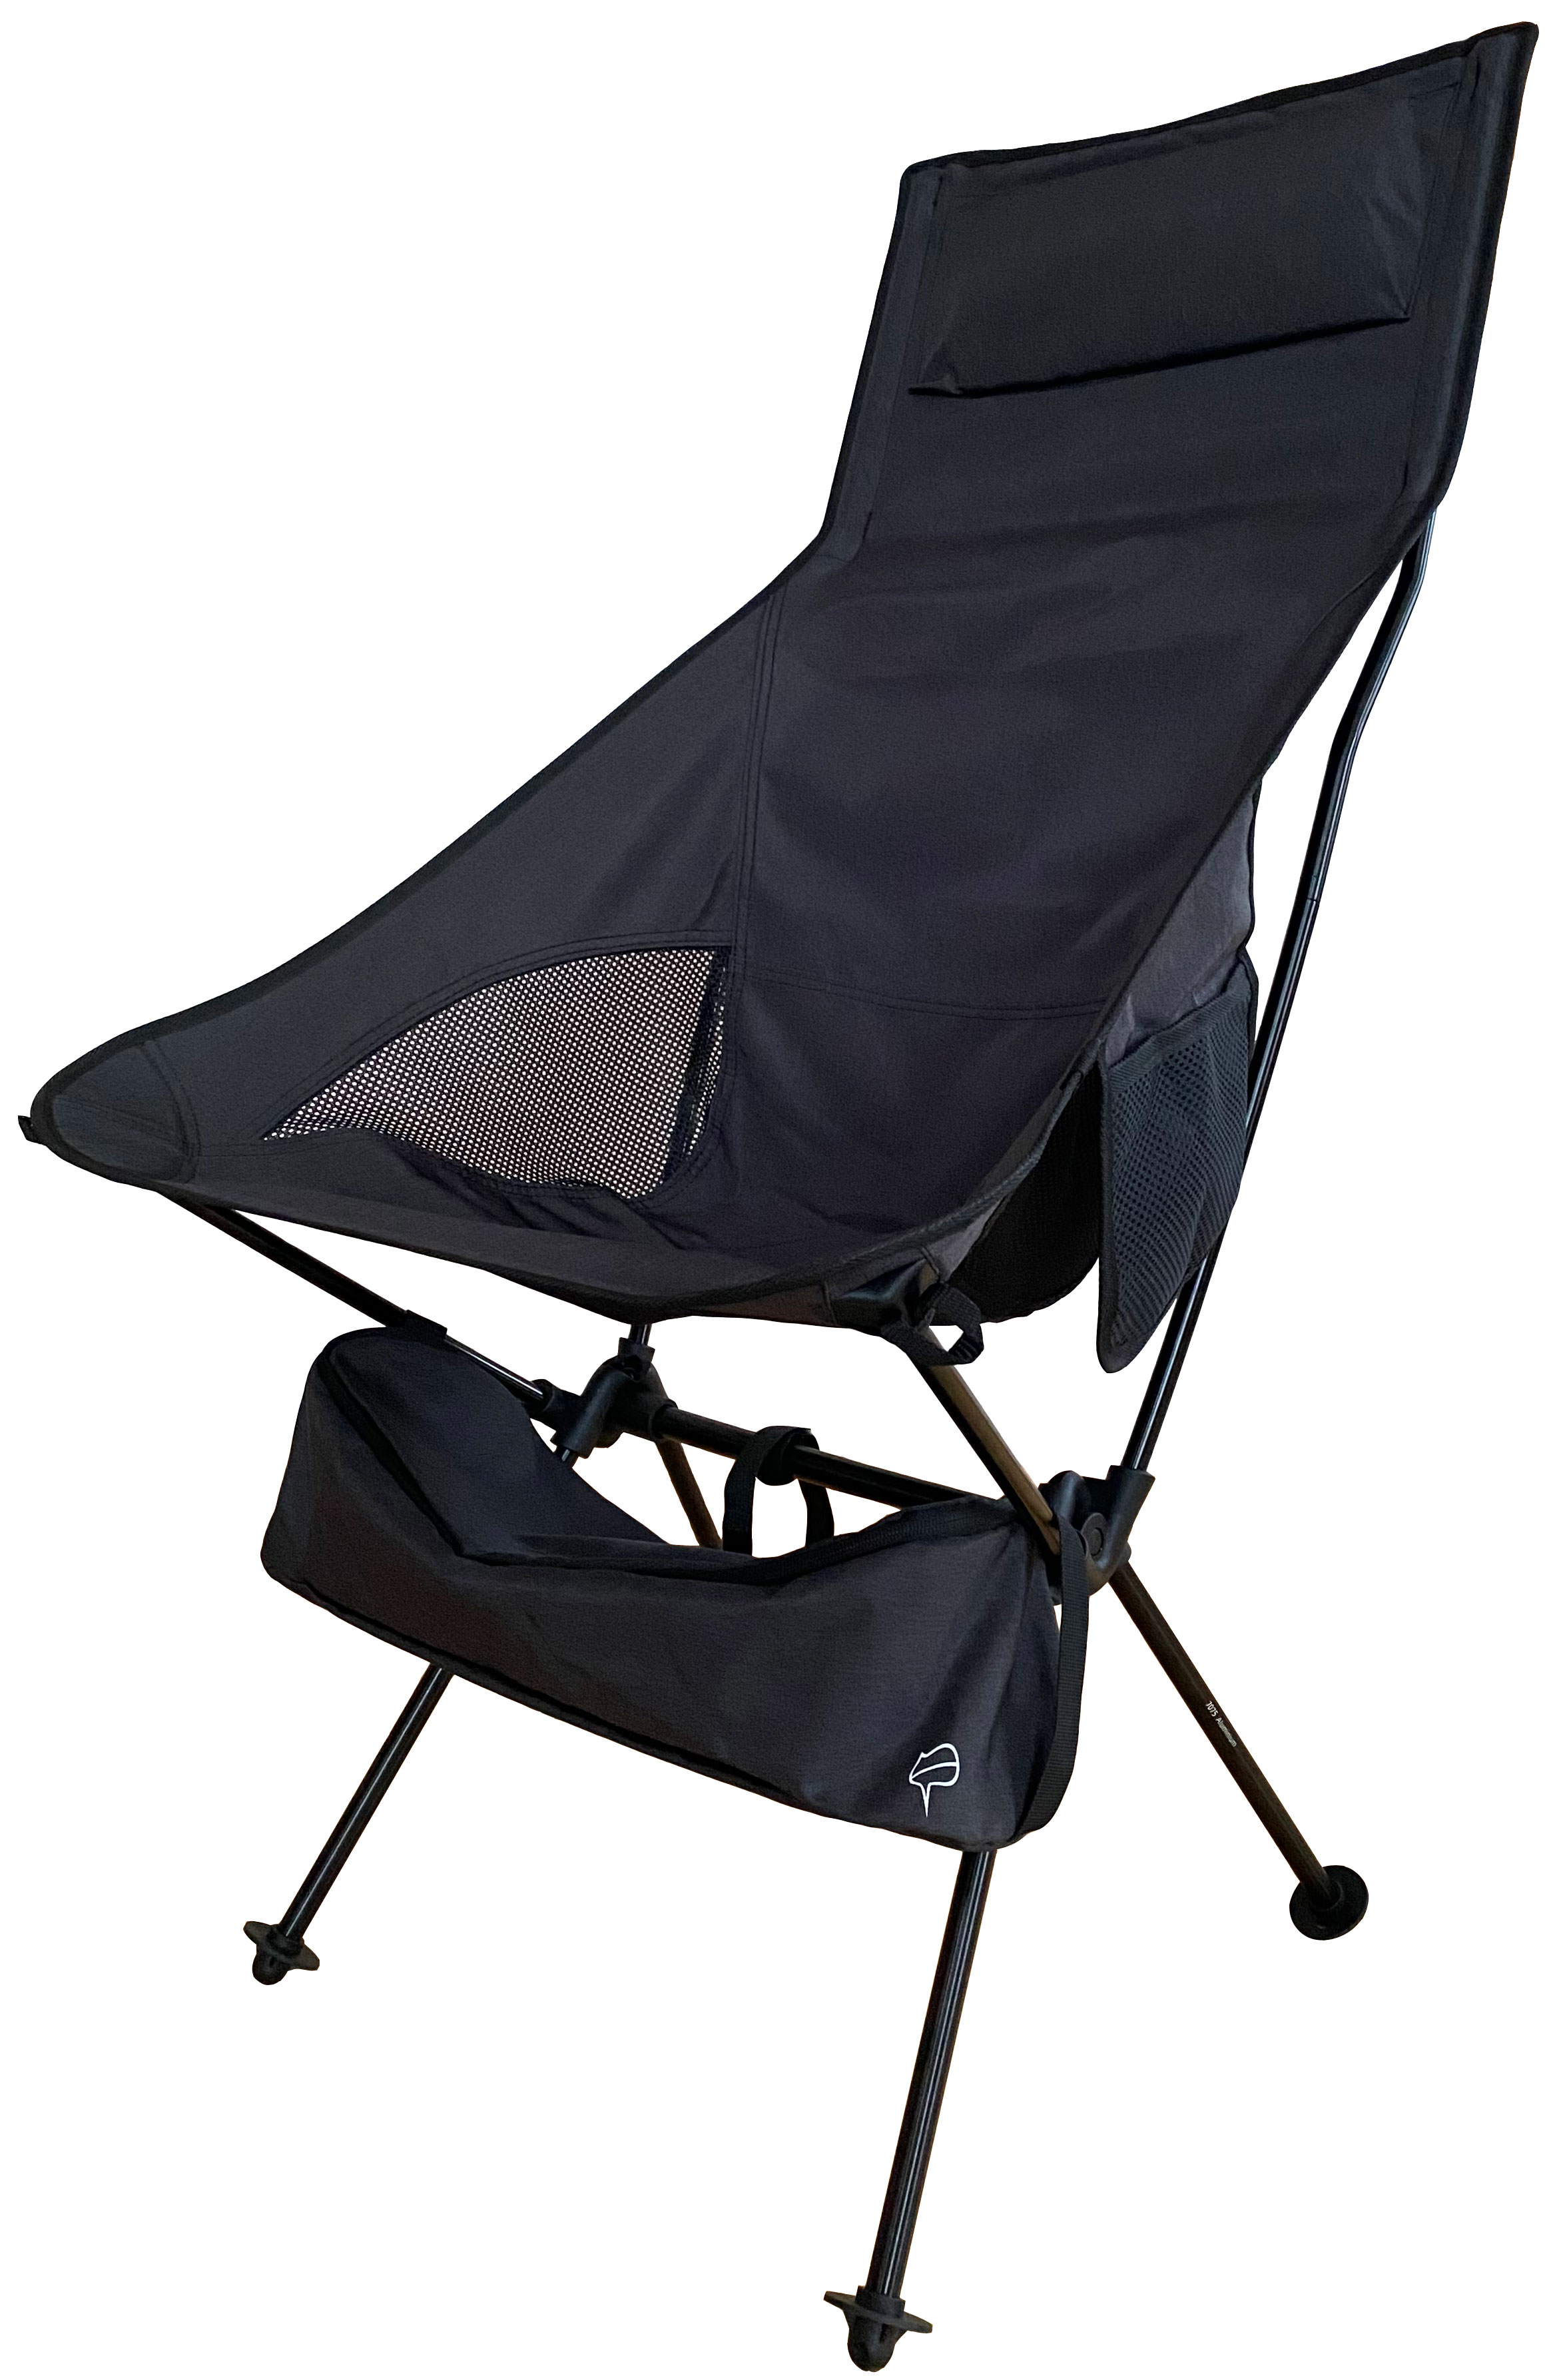 アウトドアチェア コンパクト 軽量 キャンプ椅子 ハイバック